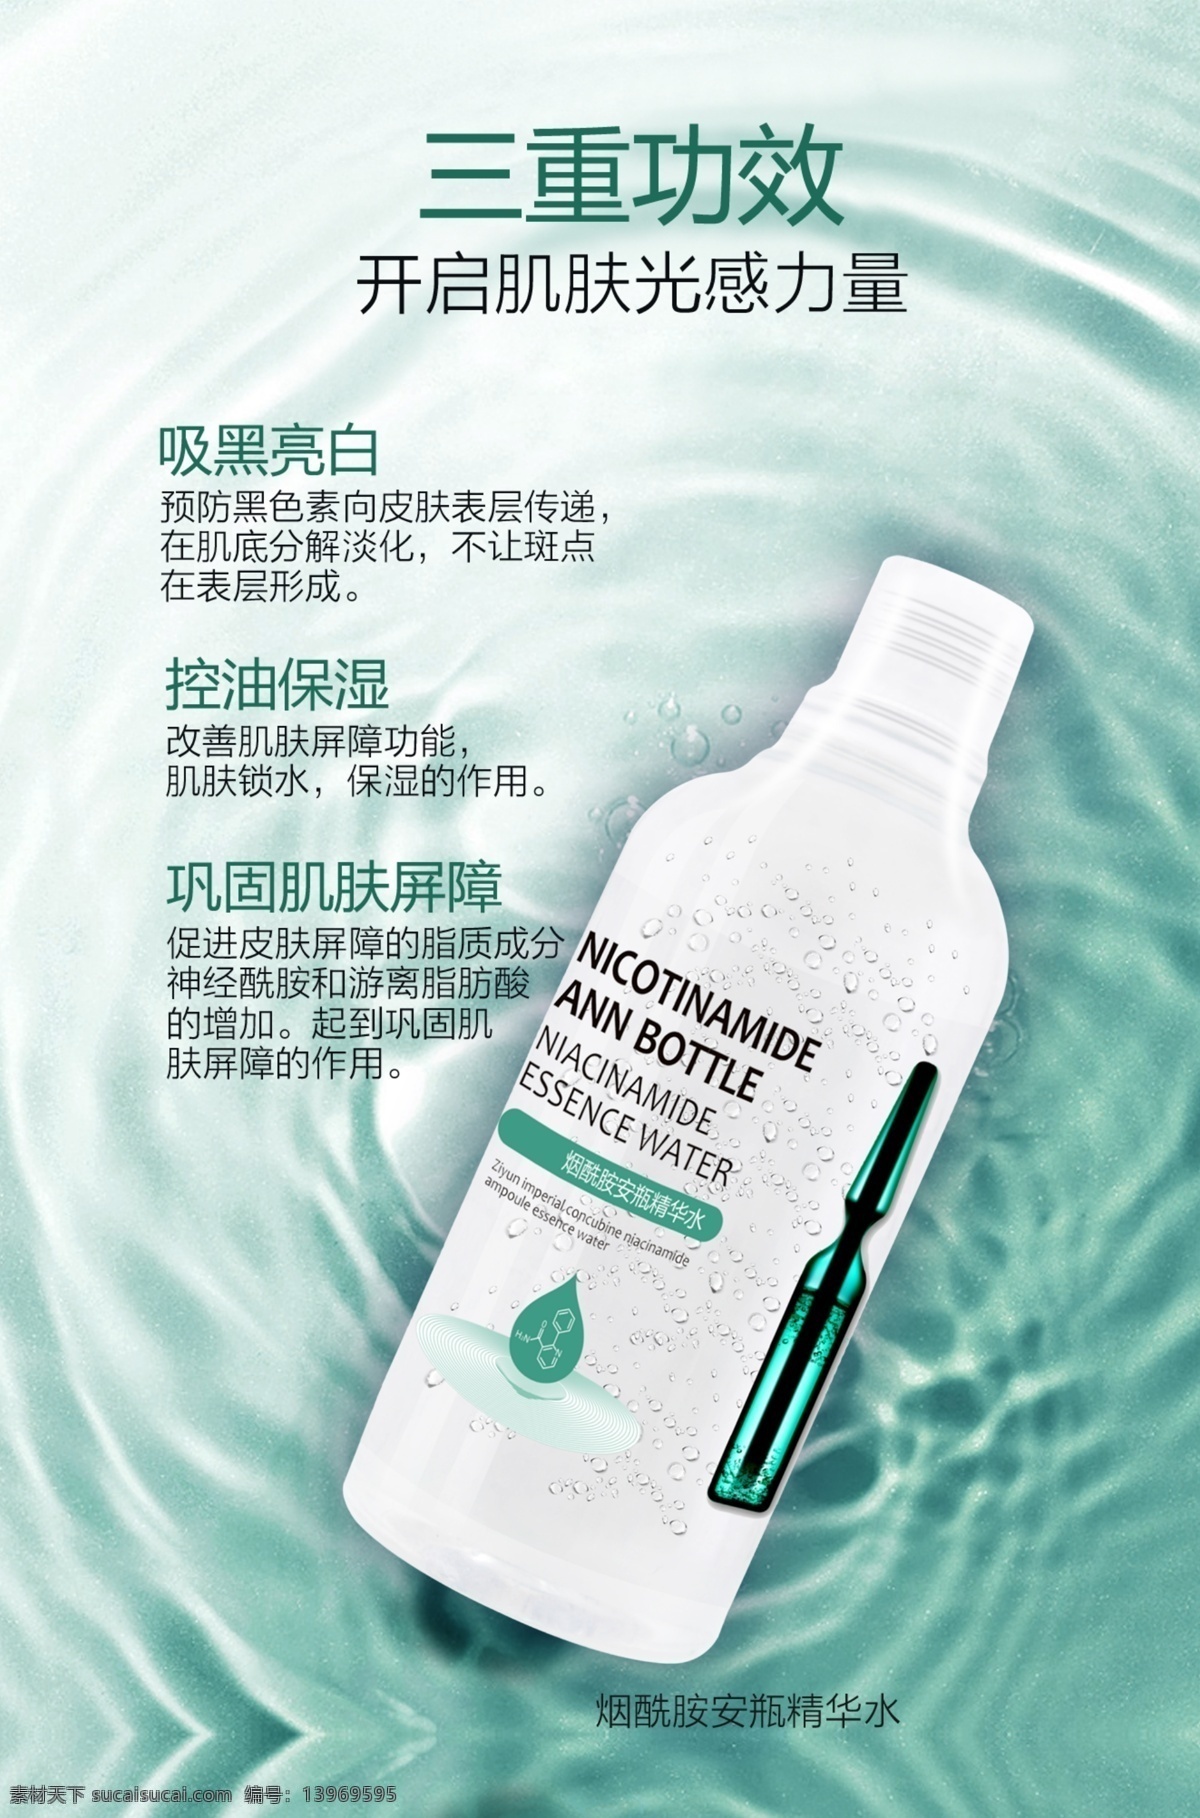 烟酰胺 安 瓶 精华 水 宣传 广告 图 精华水广告 化妆品海报 精华水素材 化妆品素材 烟酰胺广告